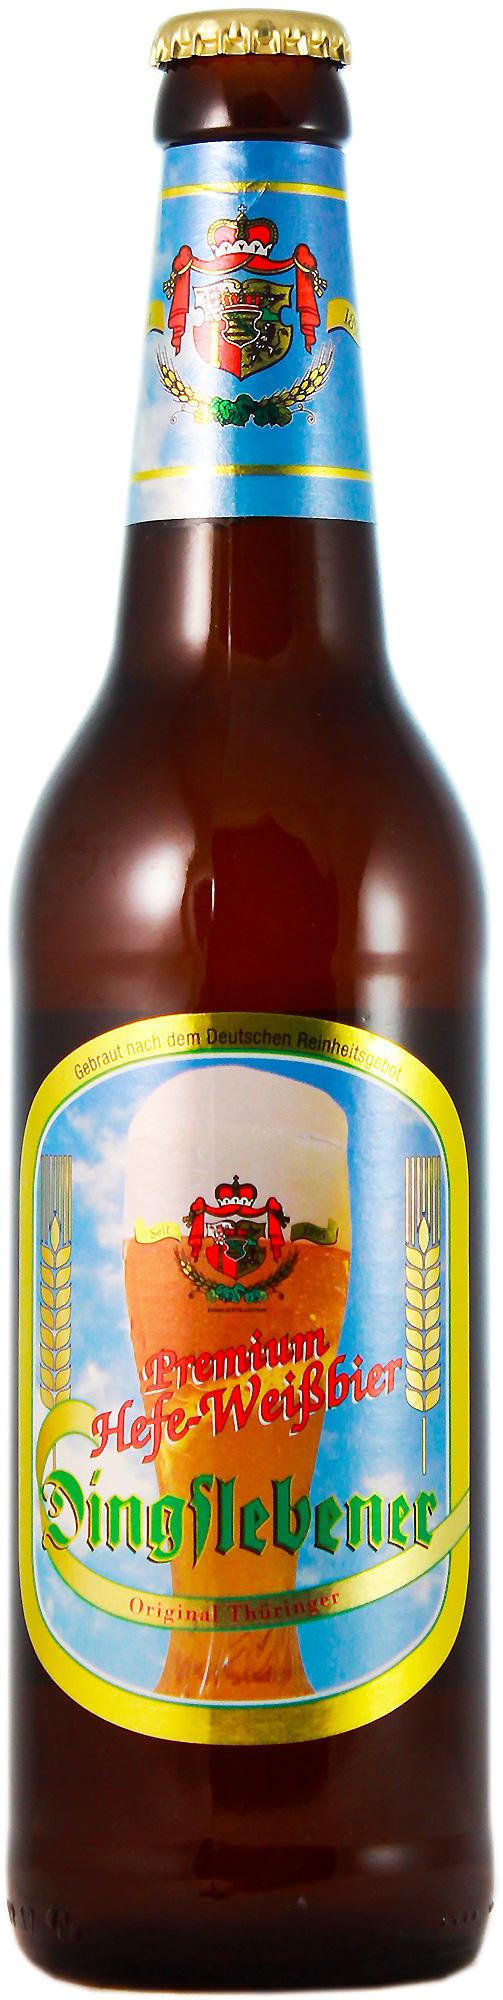 Пиво Dingslebener Hefe-Weizen пшеничное нефильтрованное светлое 4,9%, 500 мл., стекло